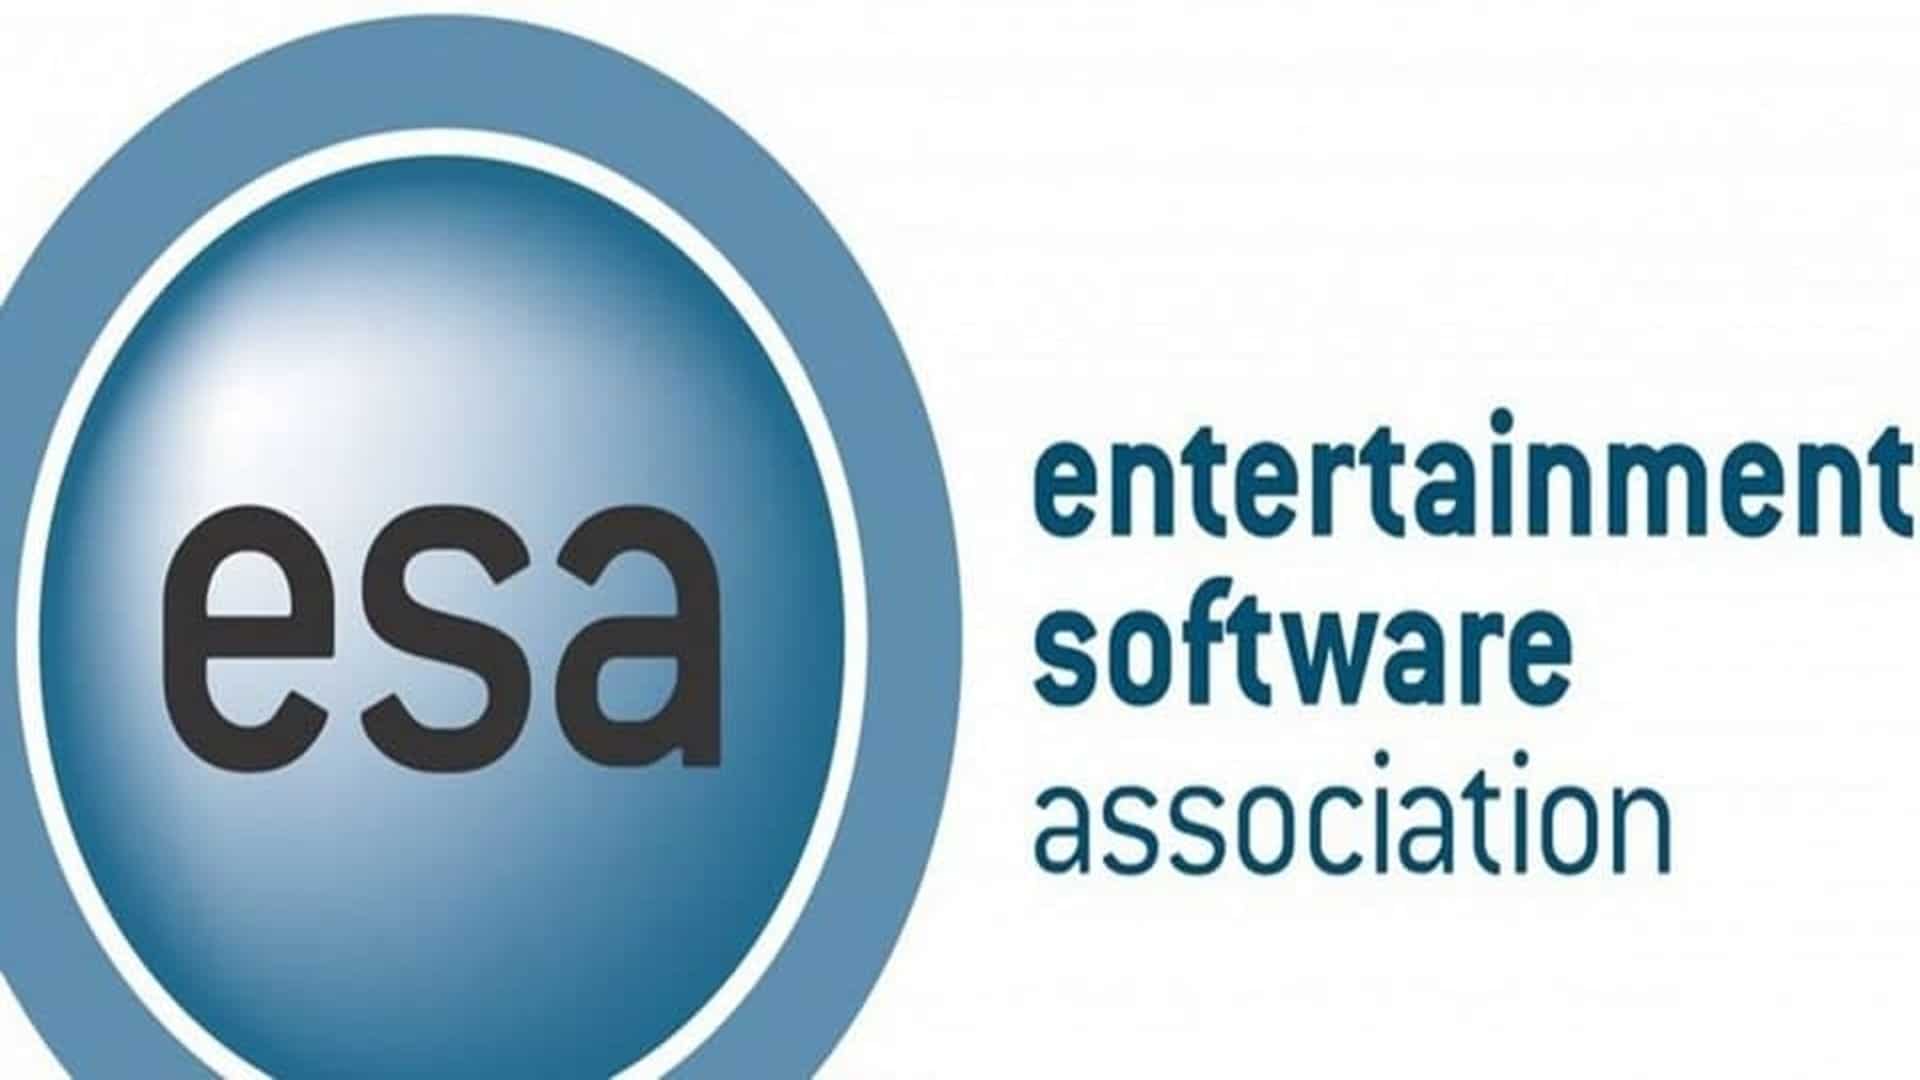 La ESA condena el acoso dentro de la industria de los videojuegos, GamersRD